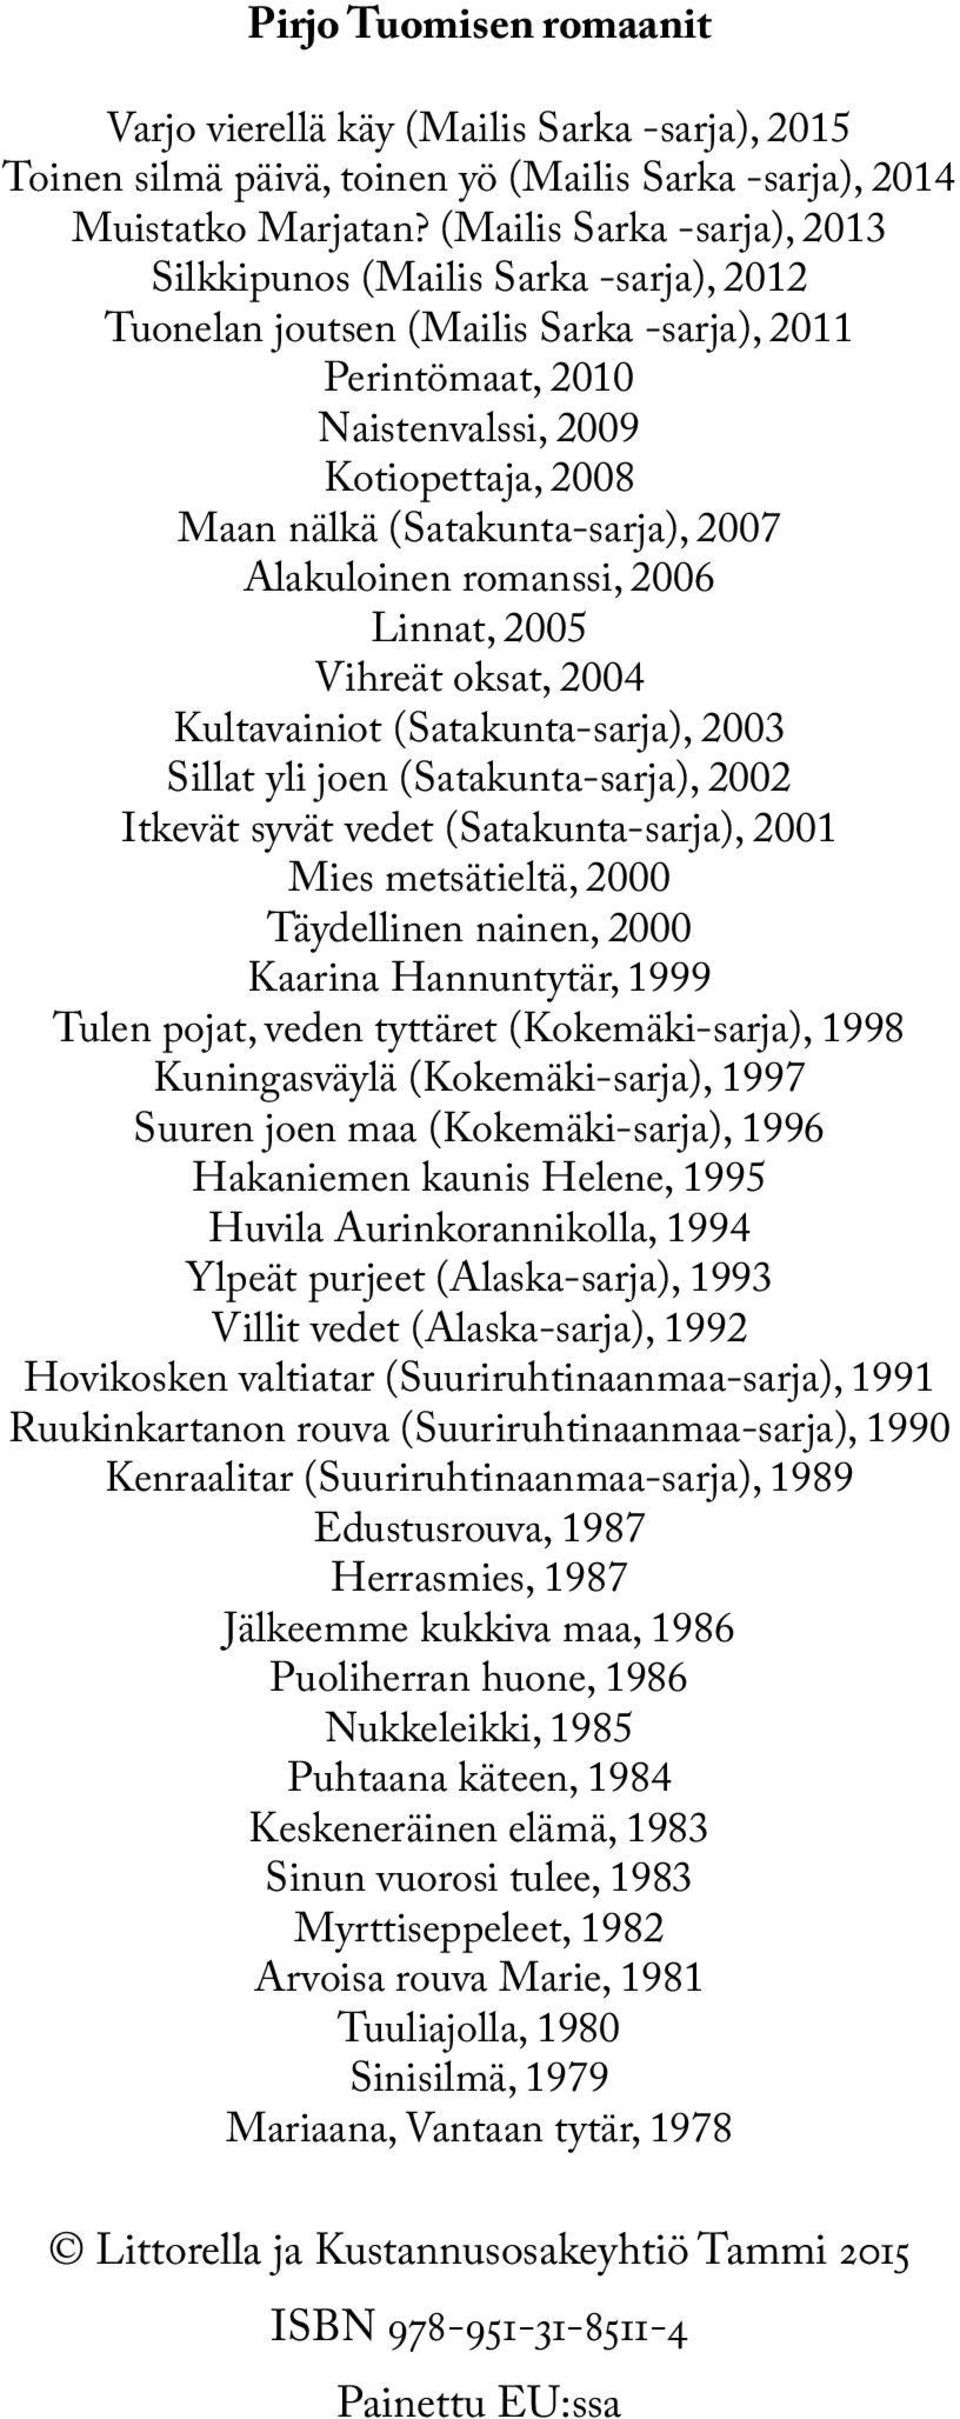 2007 Alakuloinen romanssi, 2006 Linnat, 2005 Vihreät oksat, 2004 Kultavainiot (Satakunta-sarja), 2003 Sillat yli joen (Satakunta-sarja), 2002 Itkevät syvät vedet (Satakunta-sarja), 2001 Mies